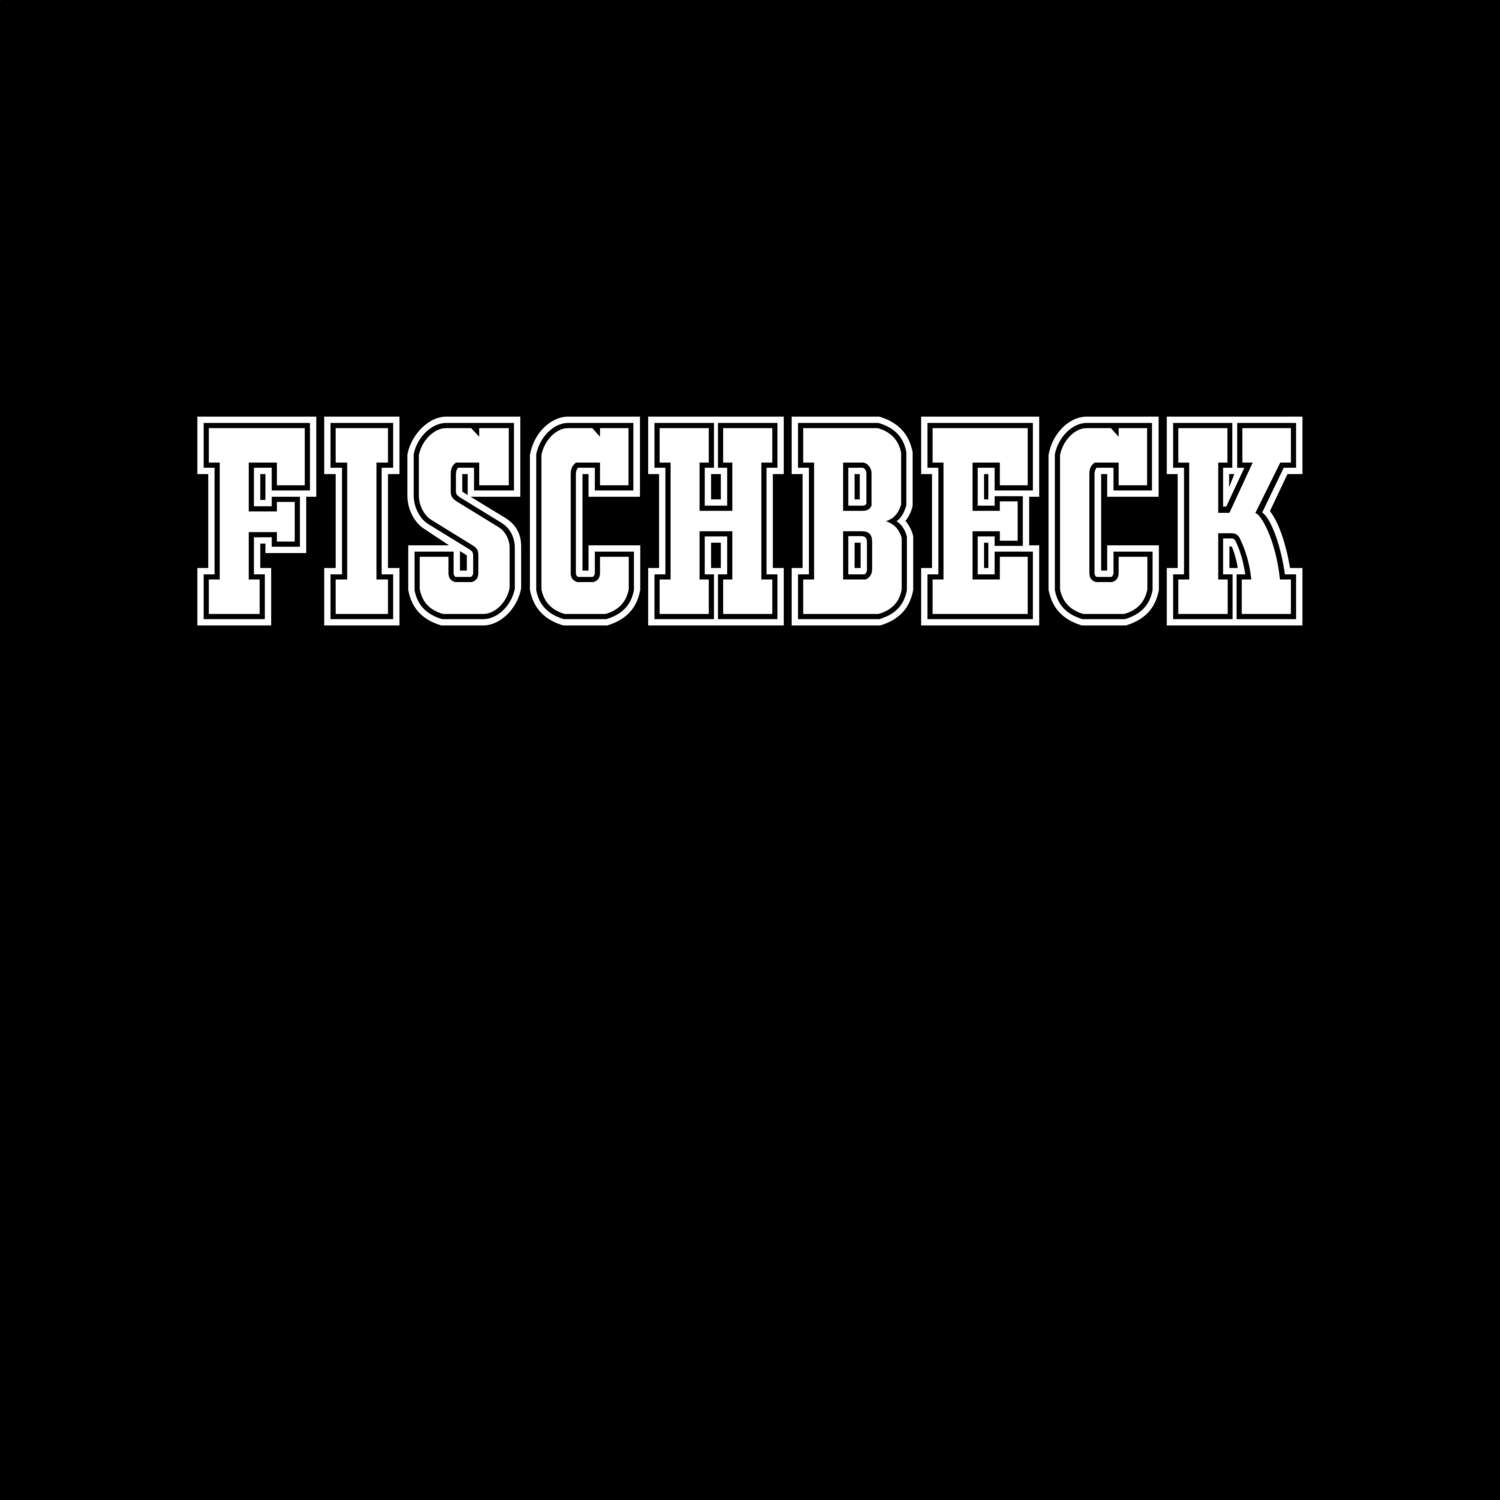 Fischbeck T-Shirt »Classic«